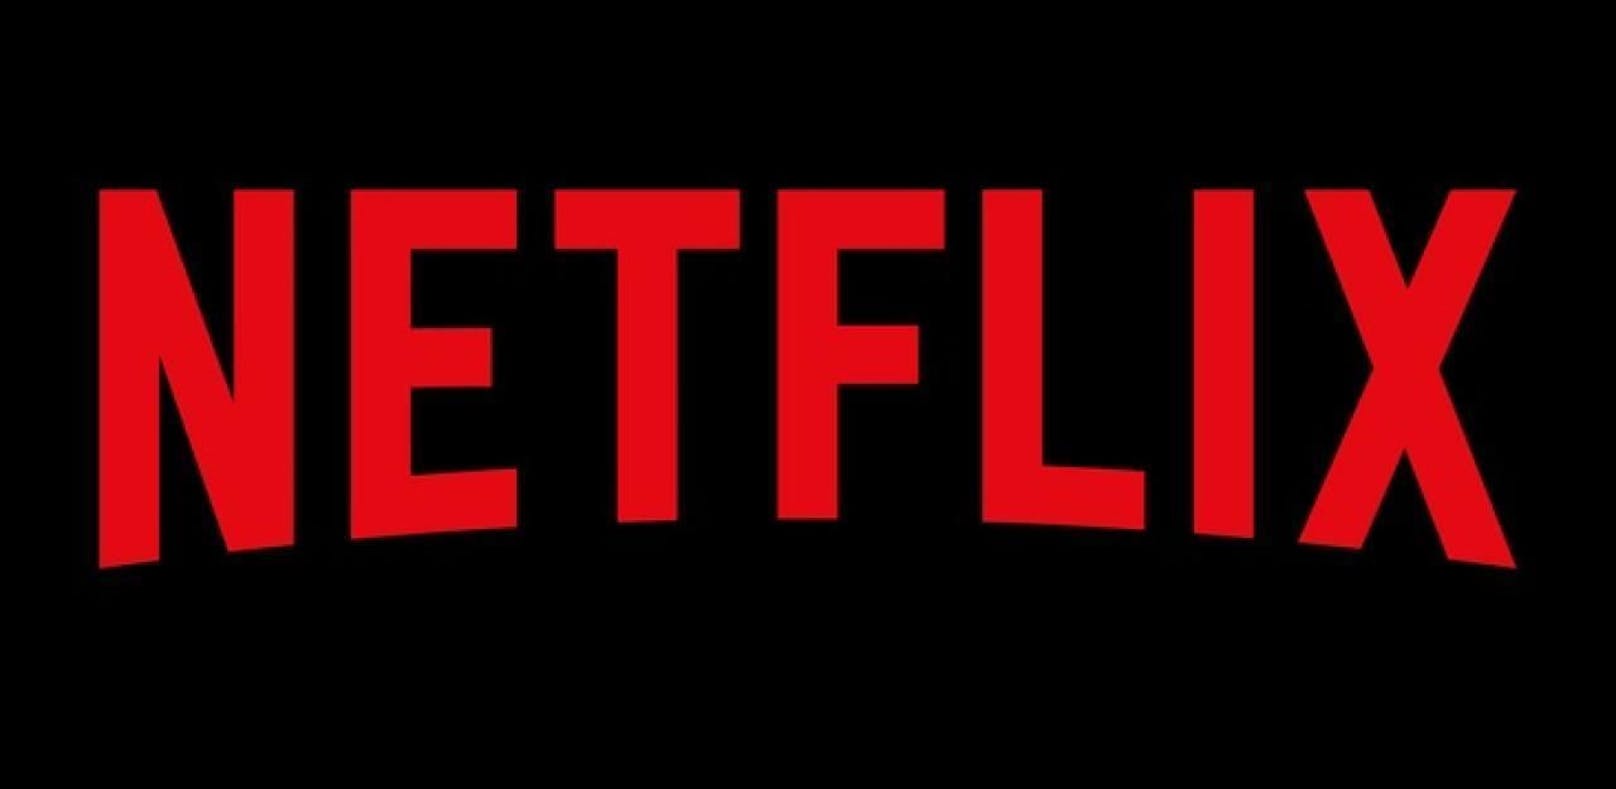 Netflix (Logo)